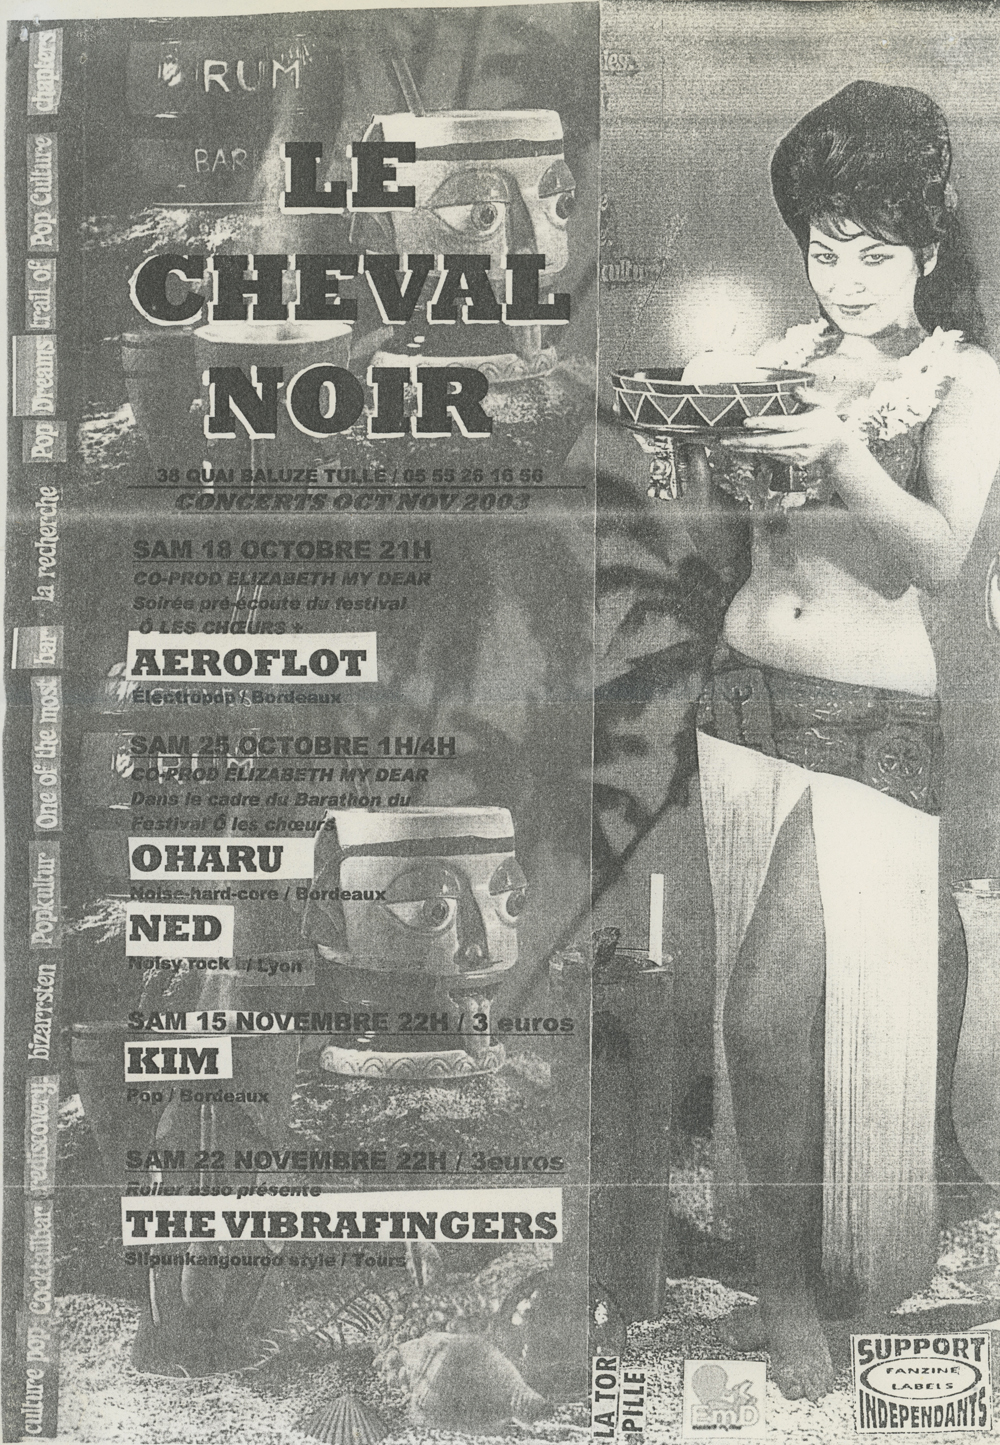 Flyer des concerts au Cheval Noir